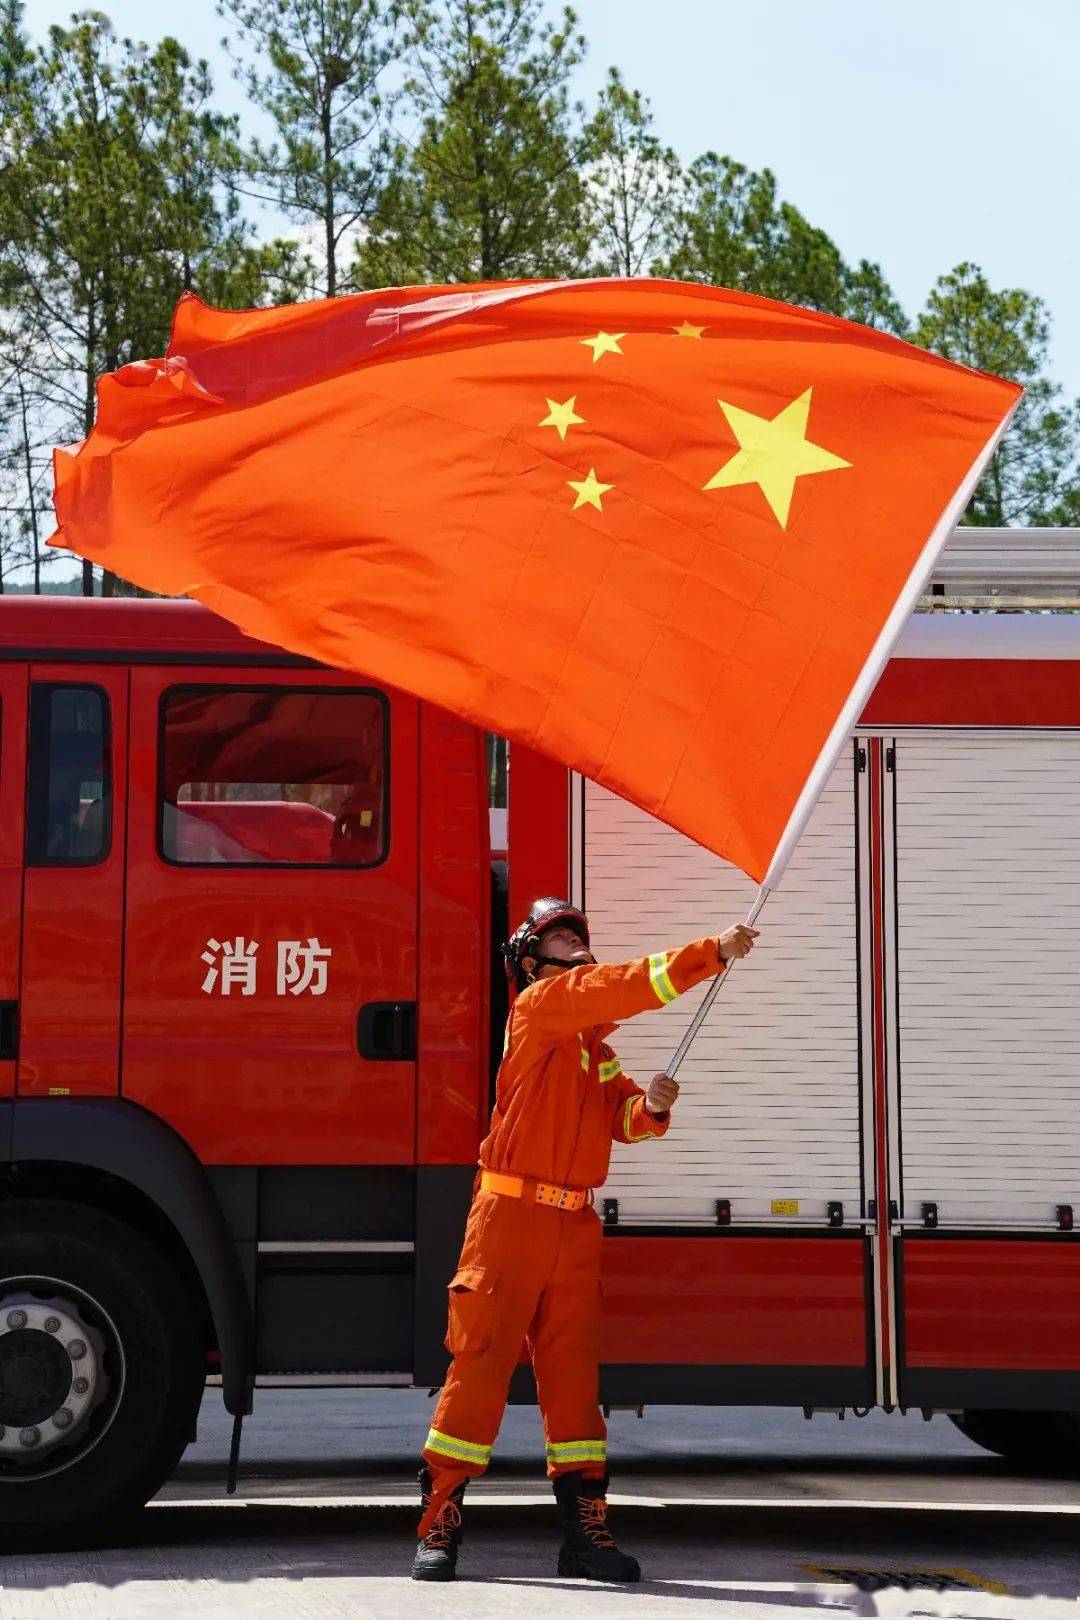 今天,桂林消防把最美好的祝福送给祖国!